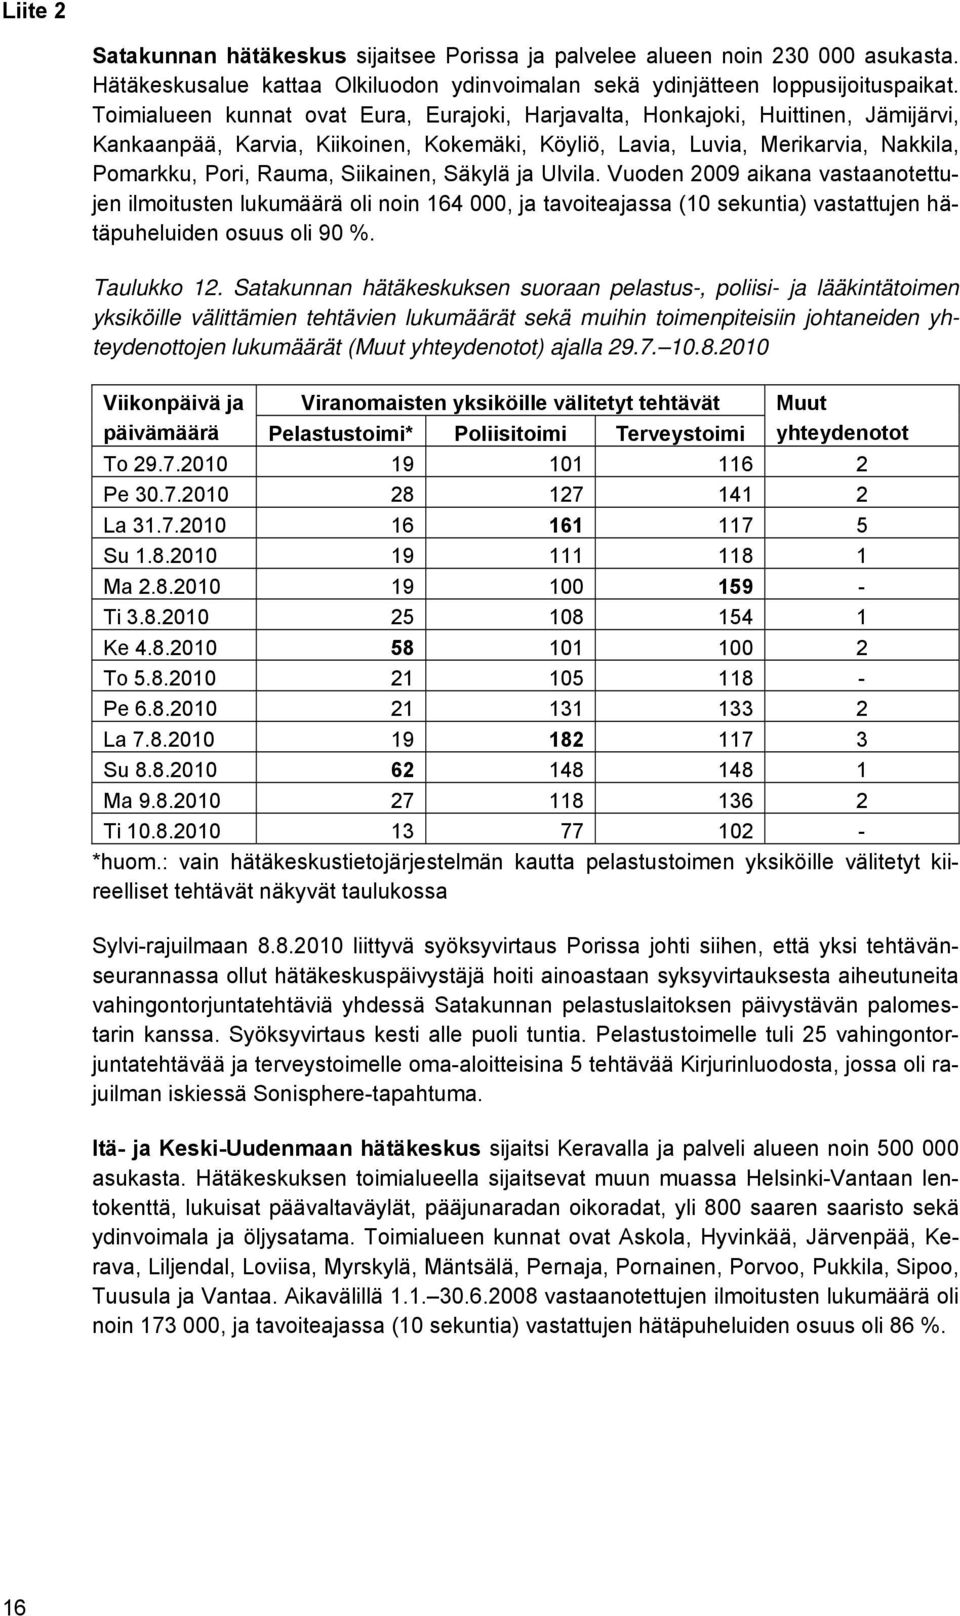 Siikainen, Säkylä ja Ulvila. Vuoden 2009 aikana vastaanotettujen ilmoitusten lukumäärä oli noin 164 000, ja tavoiteajassa (10 sekuntia) vastattujen hätäpuheluiden osuus oli 90 %. Taulukko 12.